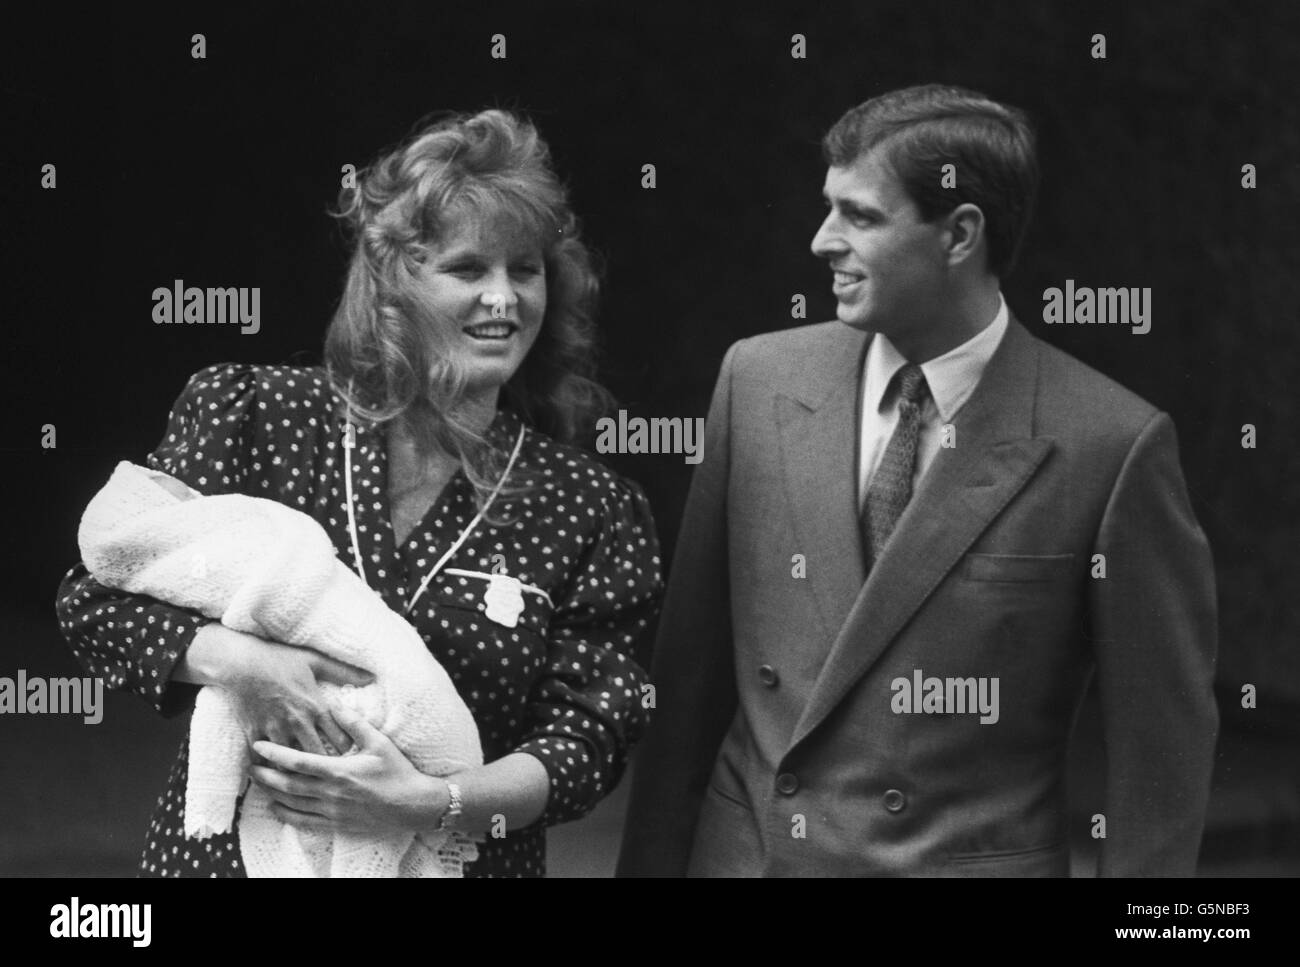 Il mondo ha il suo primo sguardo sulla principessa del bambino nelle braccia della Duchessa di York fuori del Portland Hospital di Londra. *scansione a bassa risoluzione - scansione ad alta risoluzione su richiesta Foto Stock